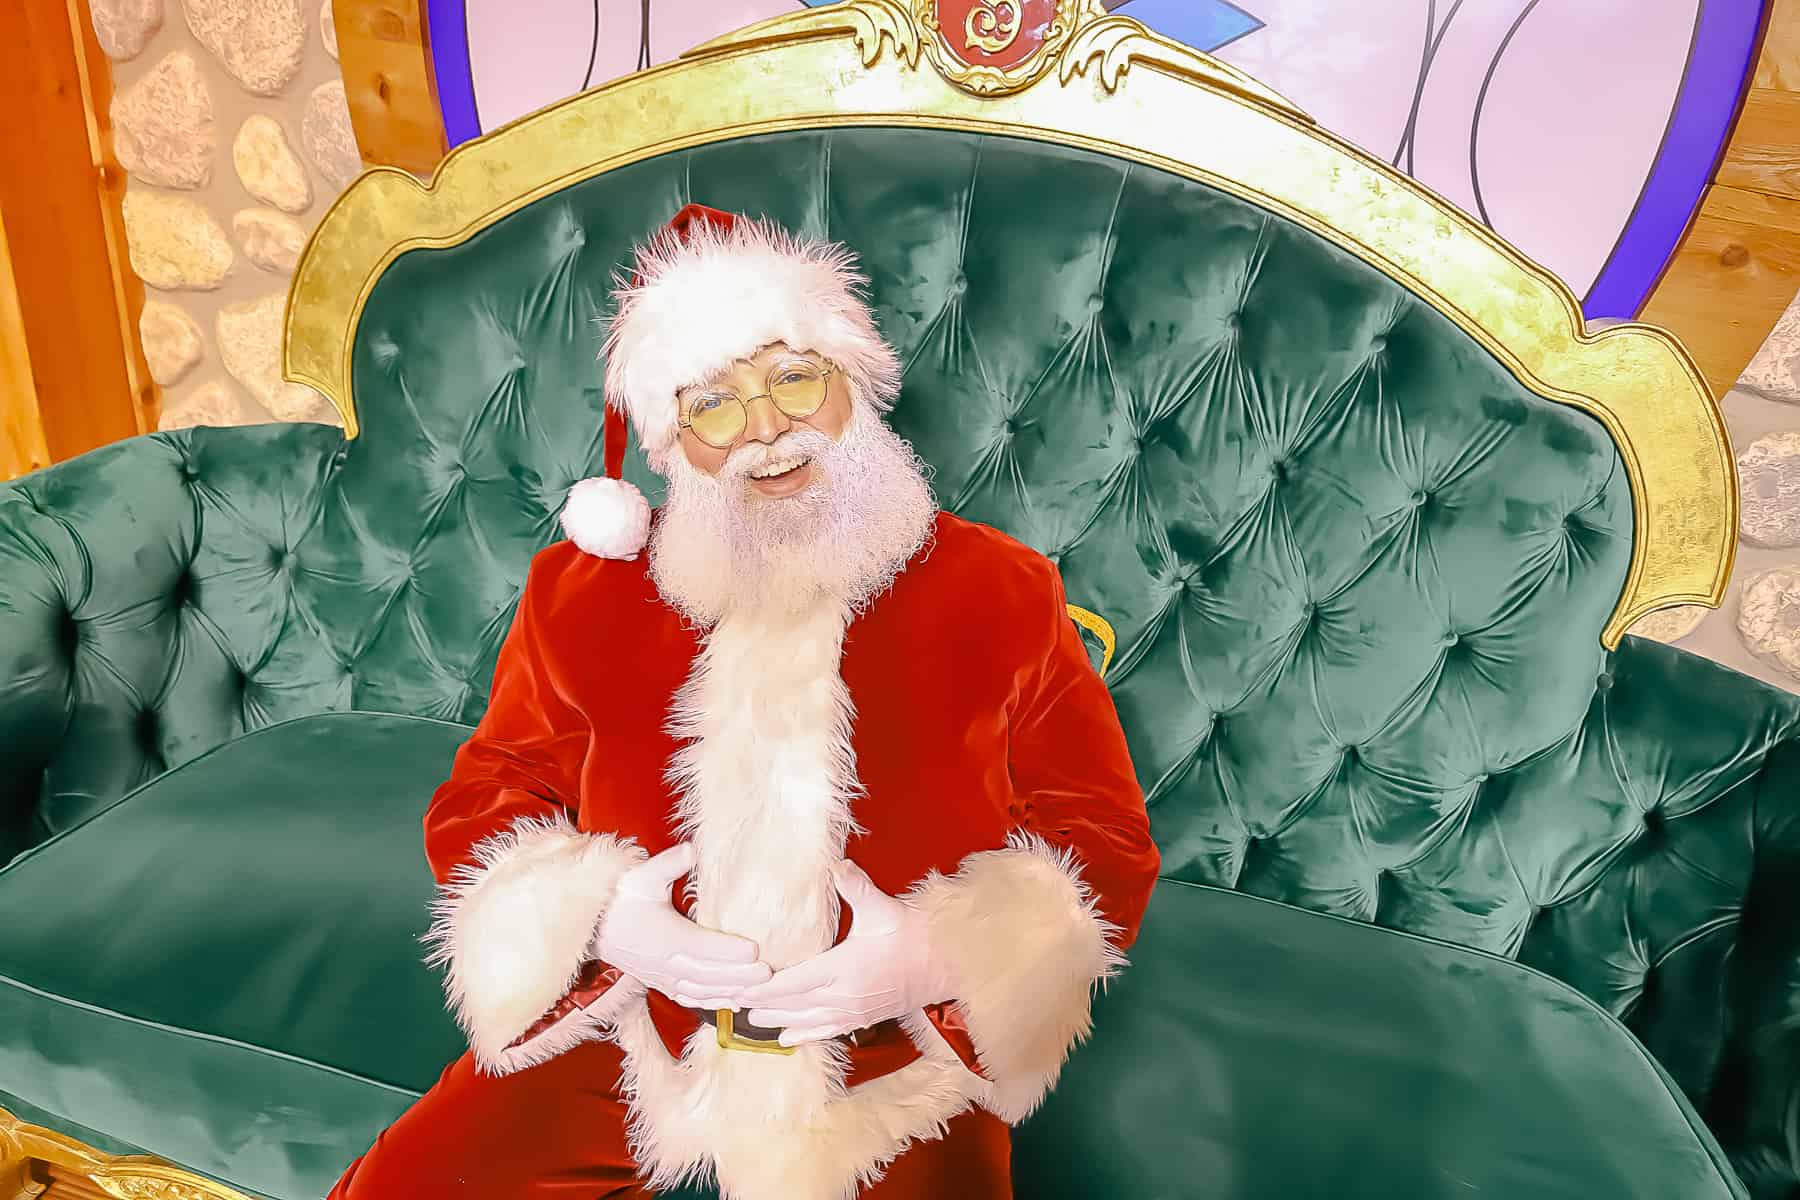 Santa Claus at Disney World 